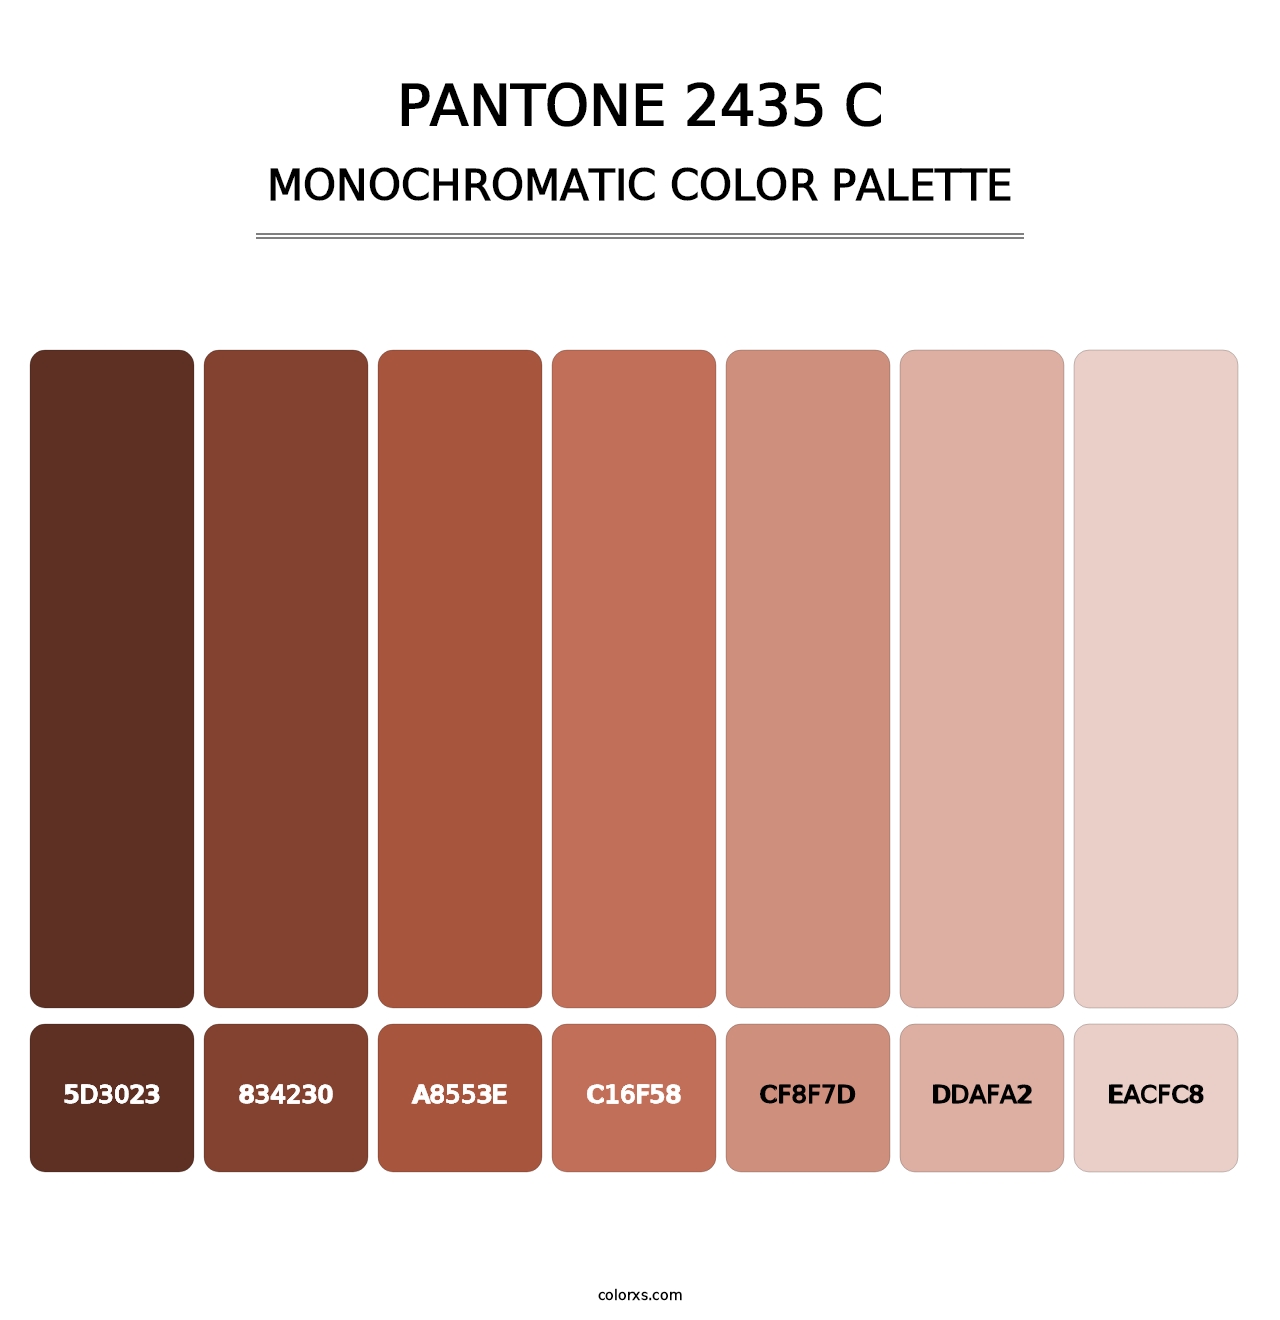 PANTONE 2435 C - Monochromatic Color Palette